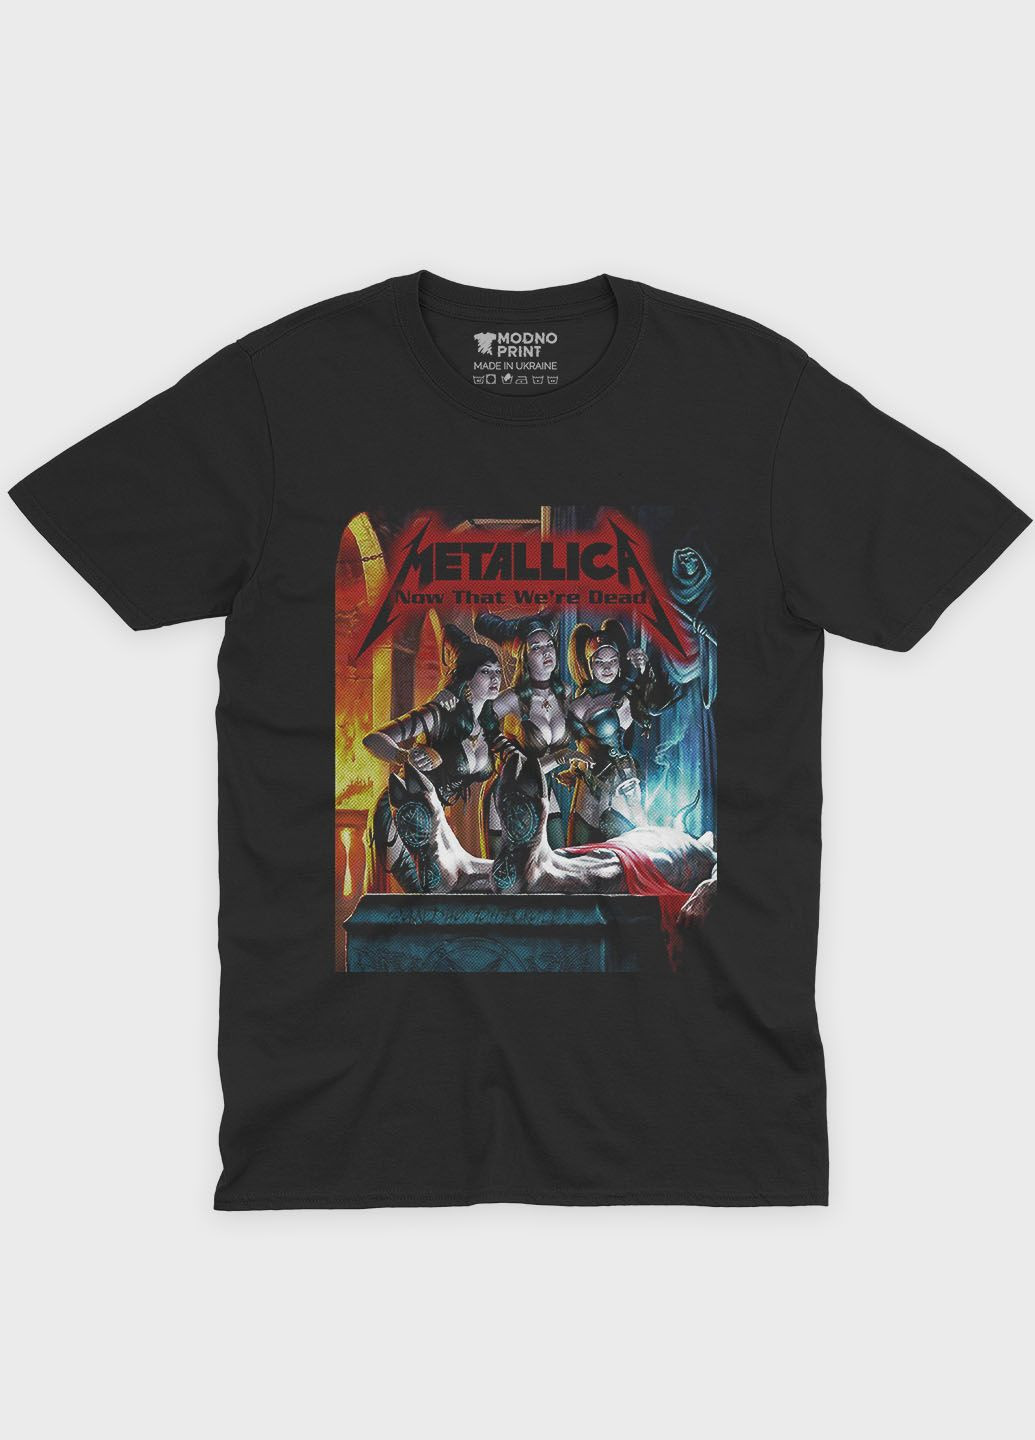 Черная мужская футболка с рок-принтом "metallica" (ts001-3-bl-004-2-225) Modno